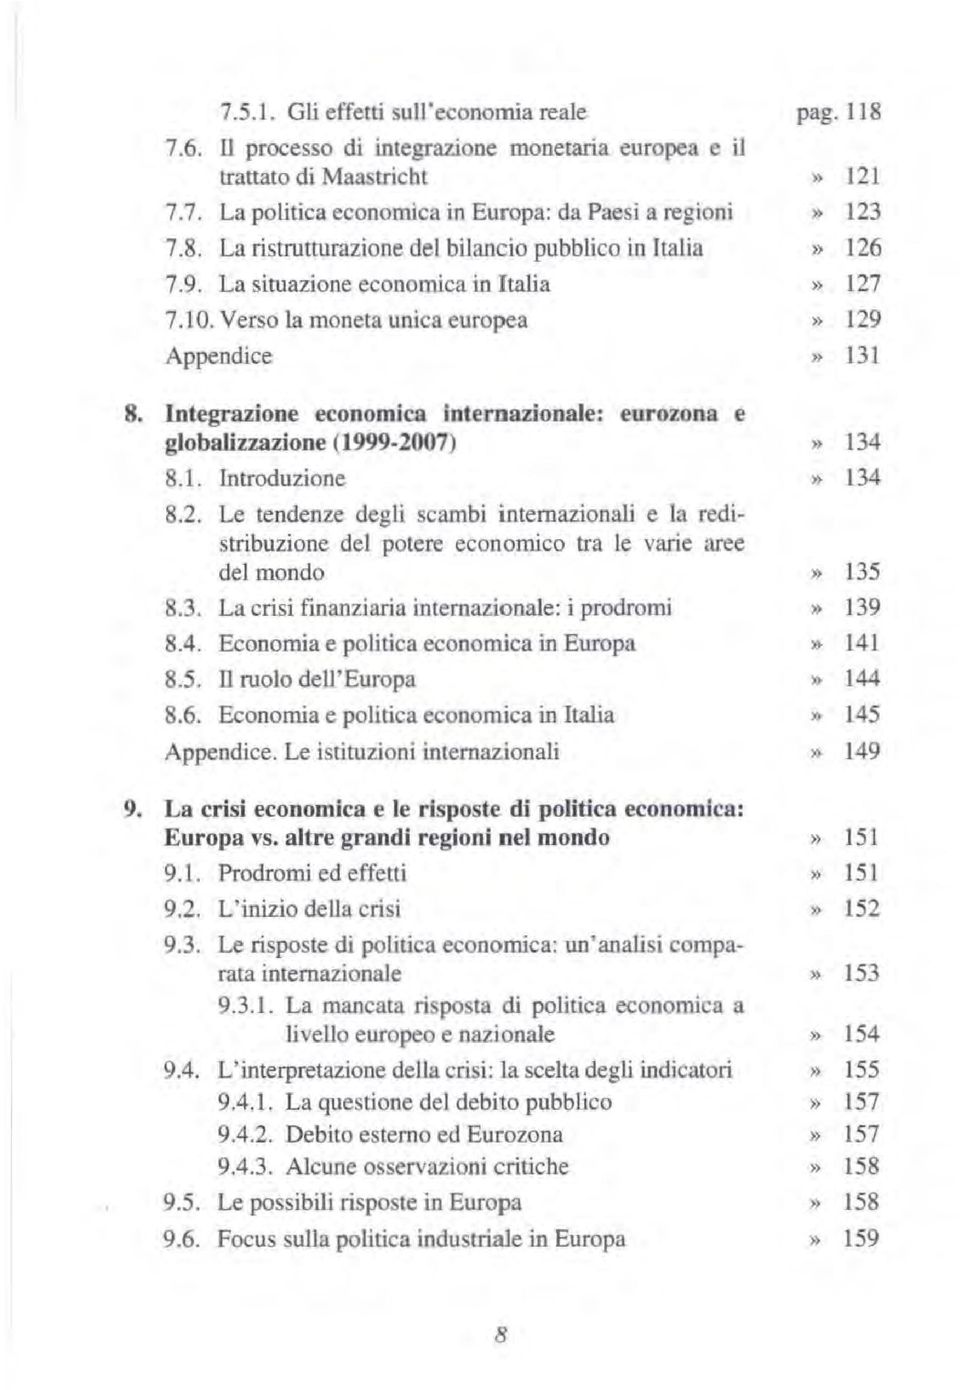 Integrazione economica internazionale: eurozona e globalizzazione (1999-2007) 8.1. Introduzione 8.2. Le tendenze degli scambi internazionali e la redistribuzione del potere economico tra le varie aree del mondo 8.